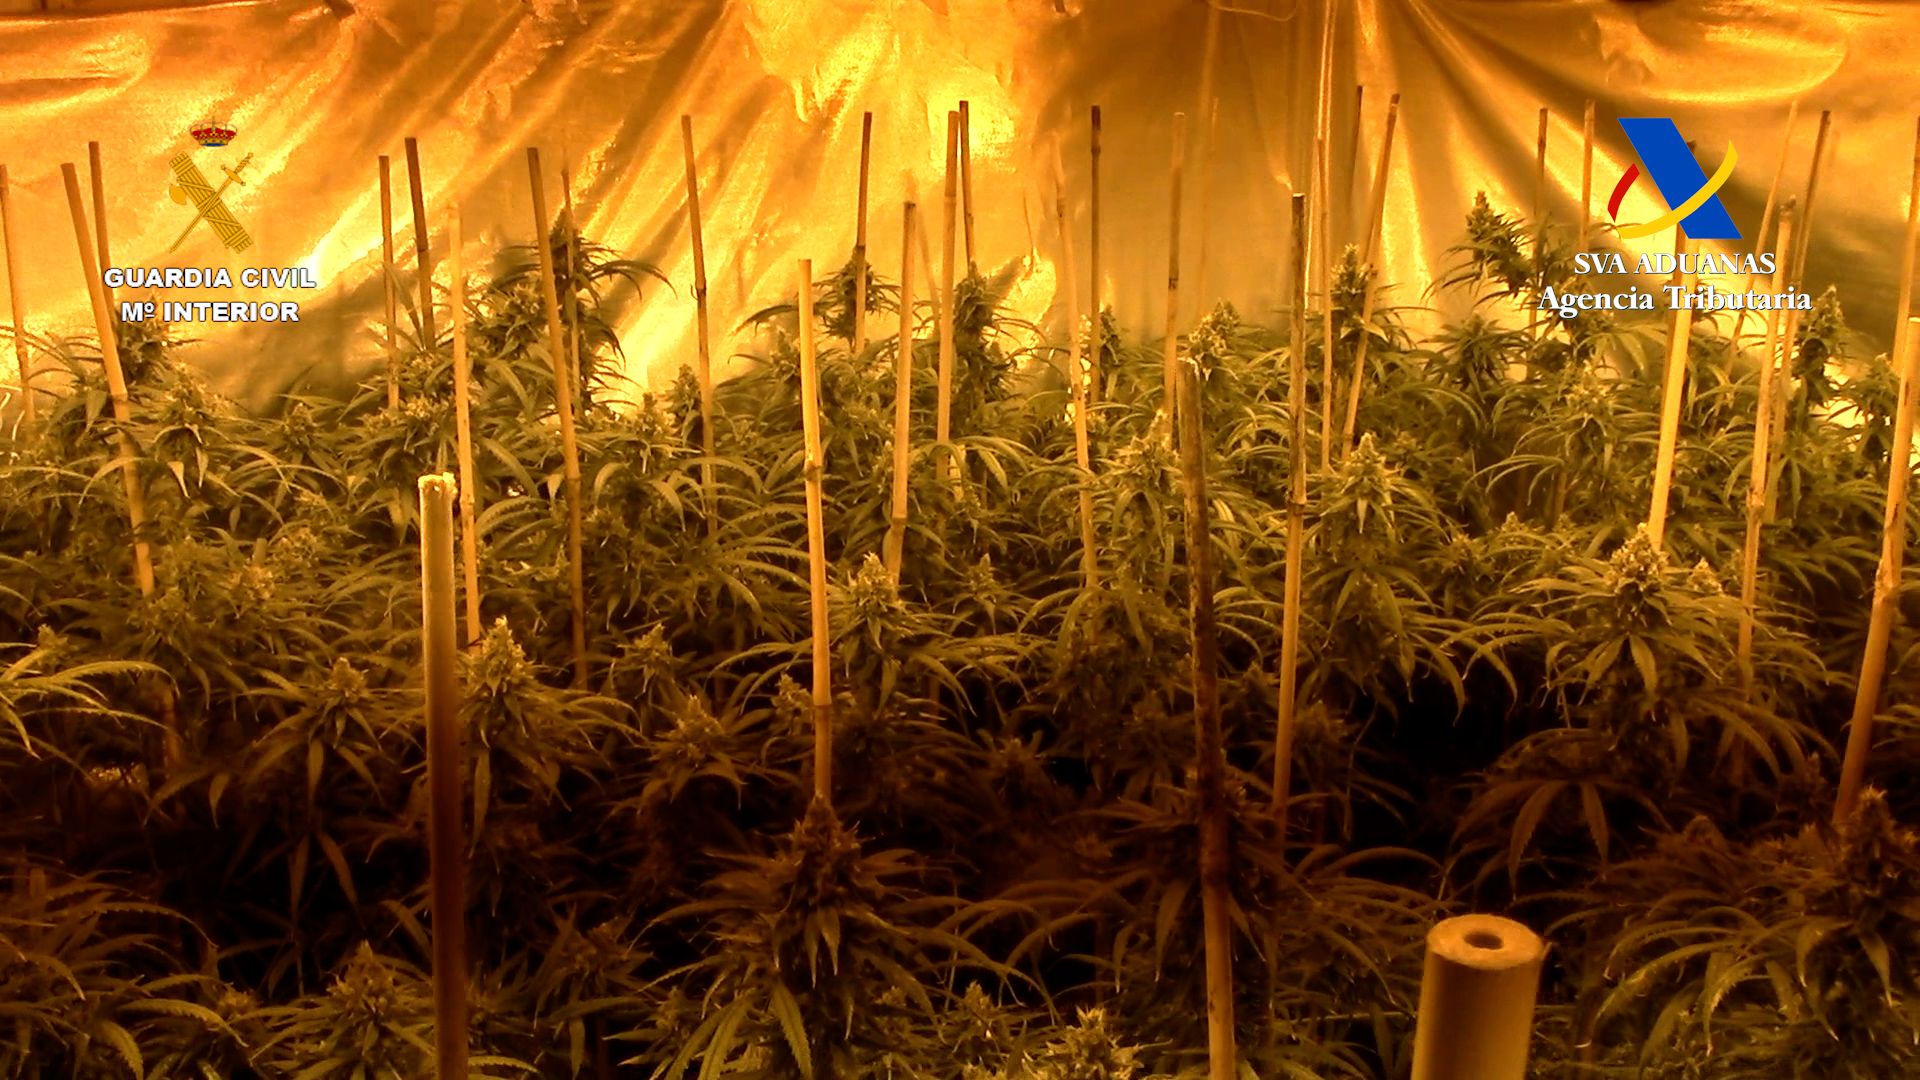 Plantación de marihuana, en una imagen de archivo de la Guardia Civil y la Agencia Tributaria.